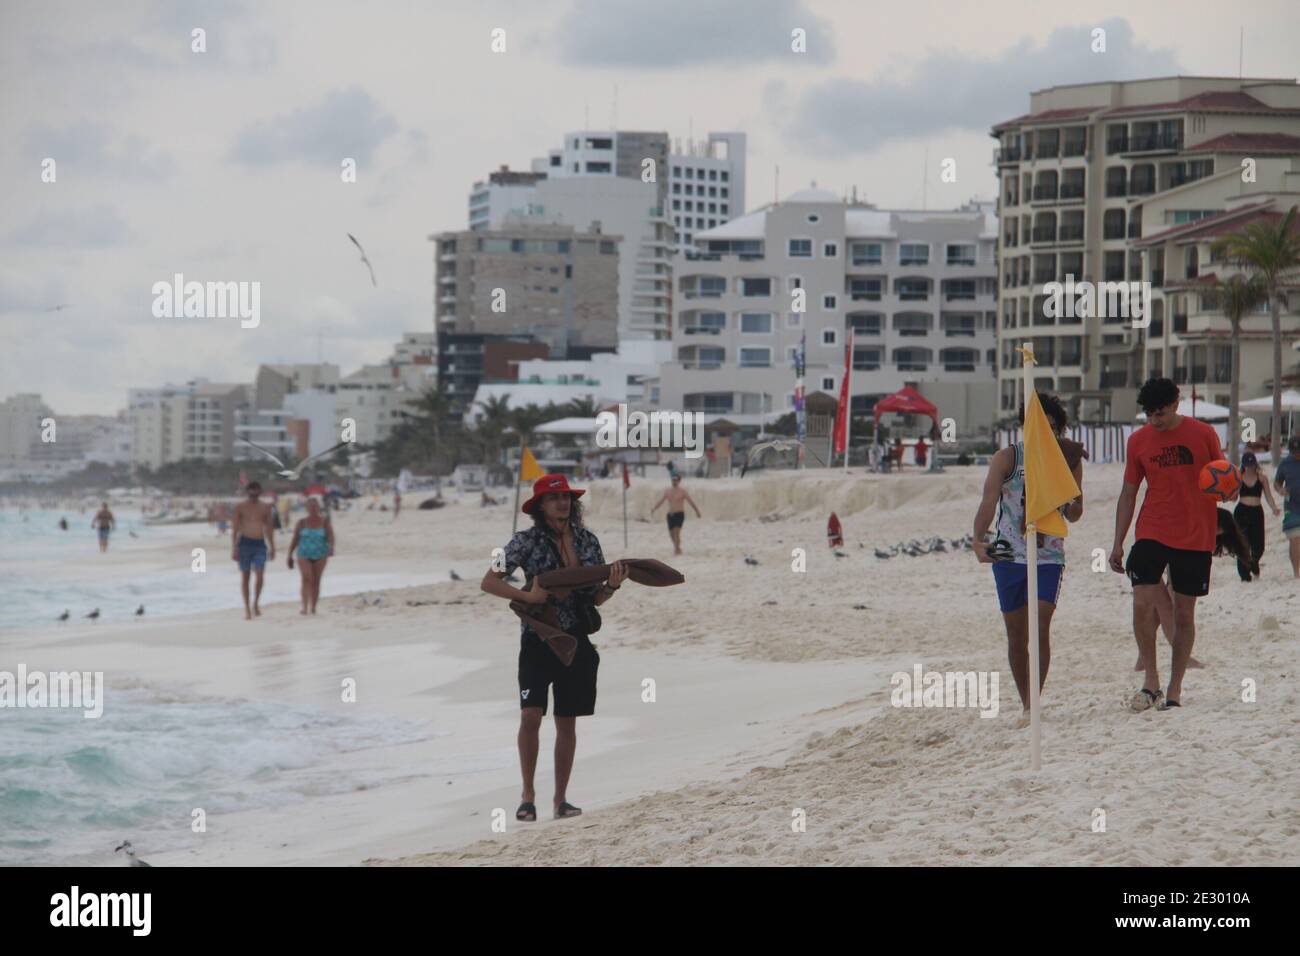 Imagem de pessoas jogando vôlei na praia.